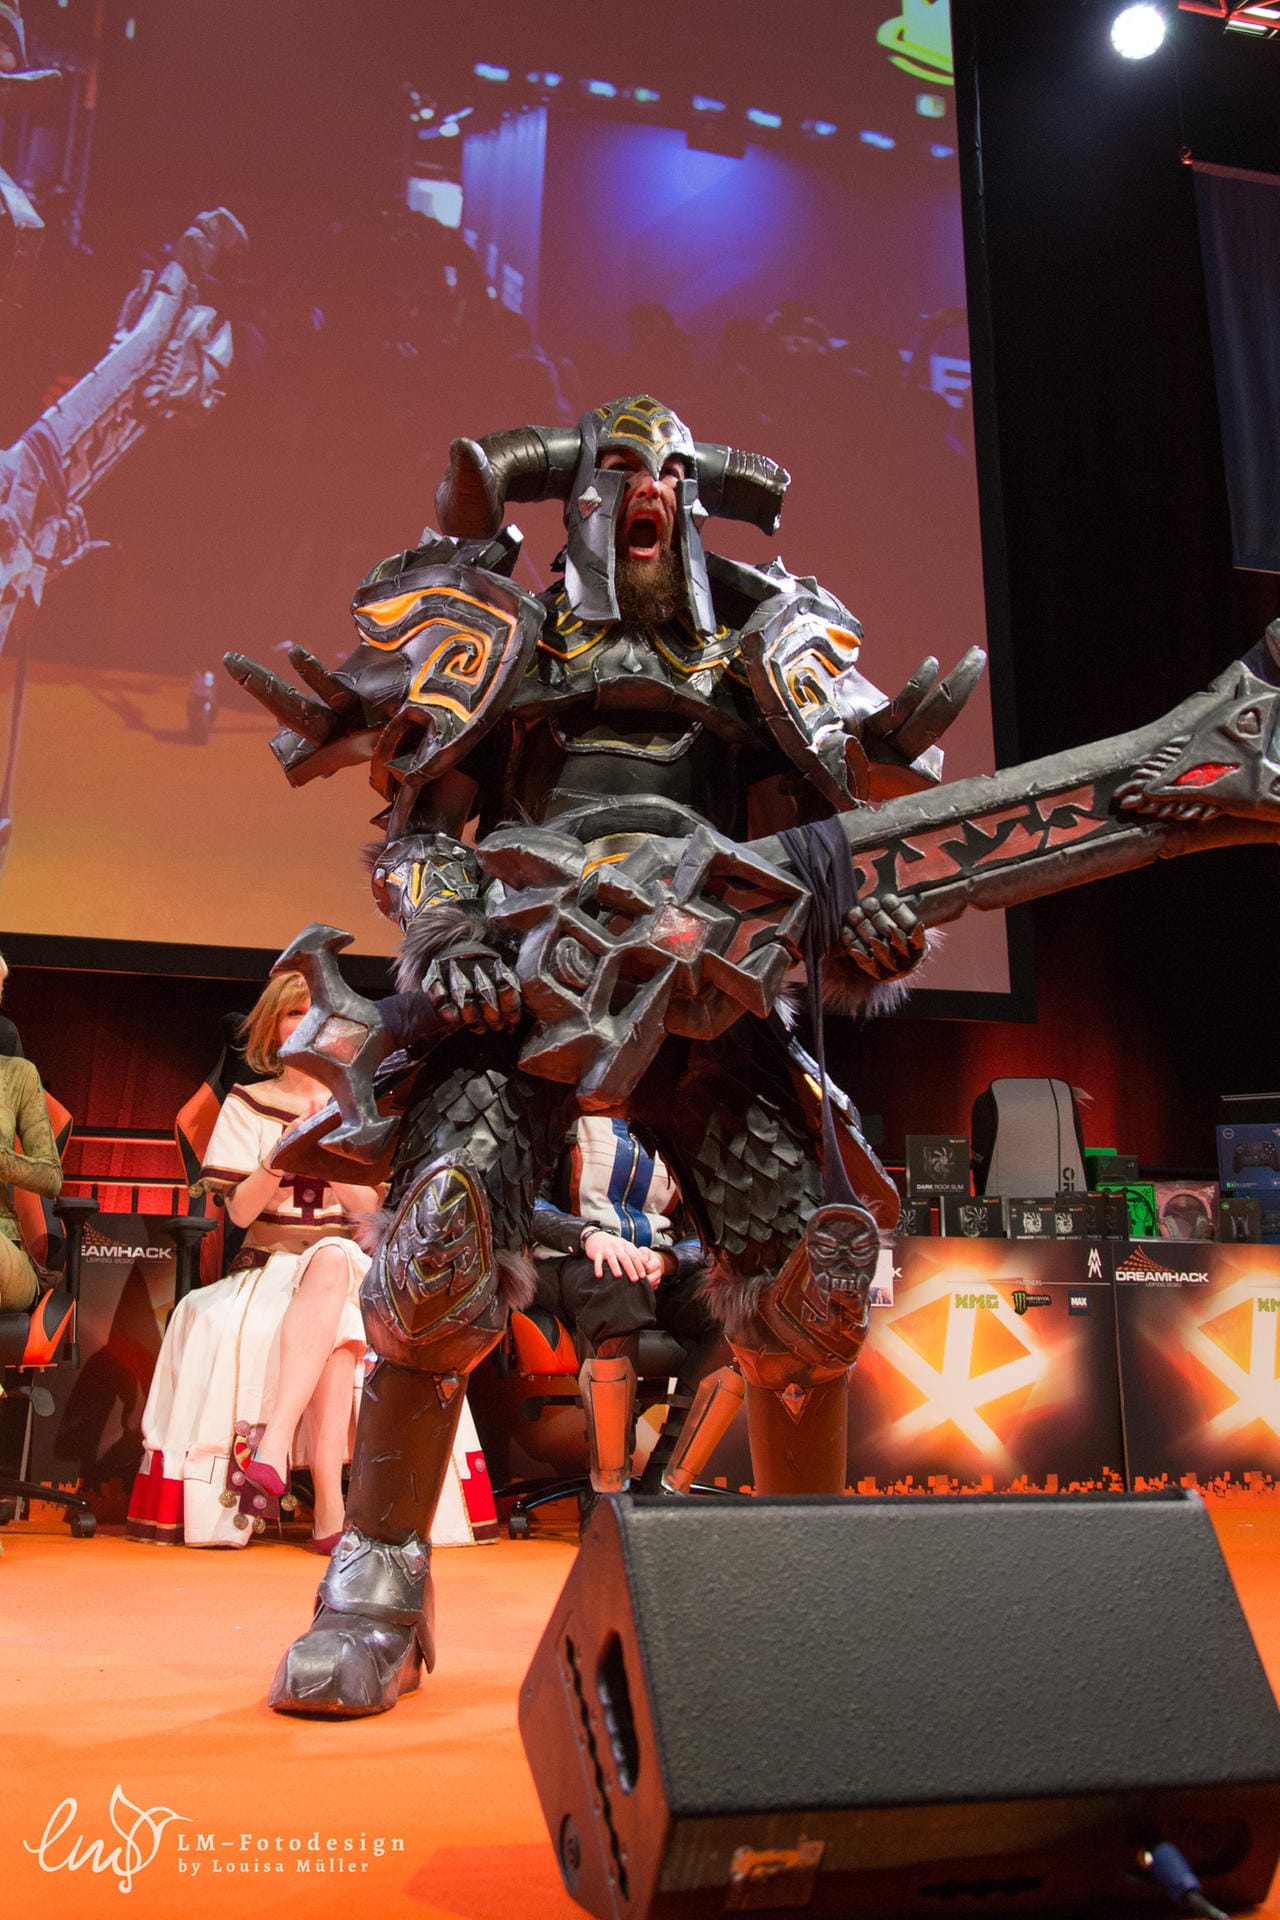 2004 kam "World of Warcraft" auf den Markt. Das Online-Rollenspiel hat immer noch zahlreiche Spieler. So auch Gisi Cosplay, der als Krieger im T10-Rüstungsset über die Bühne schreitet.